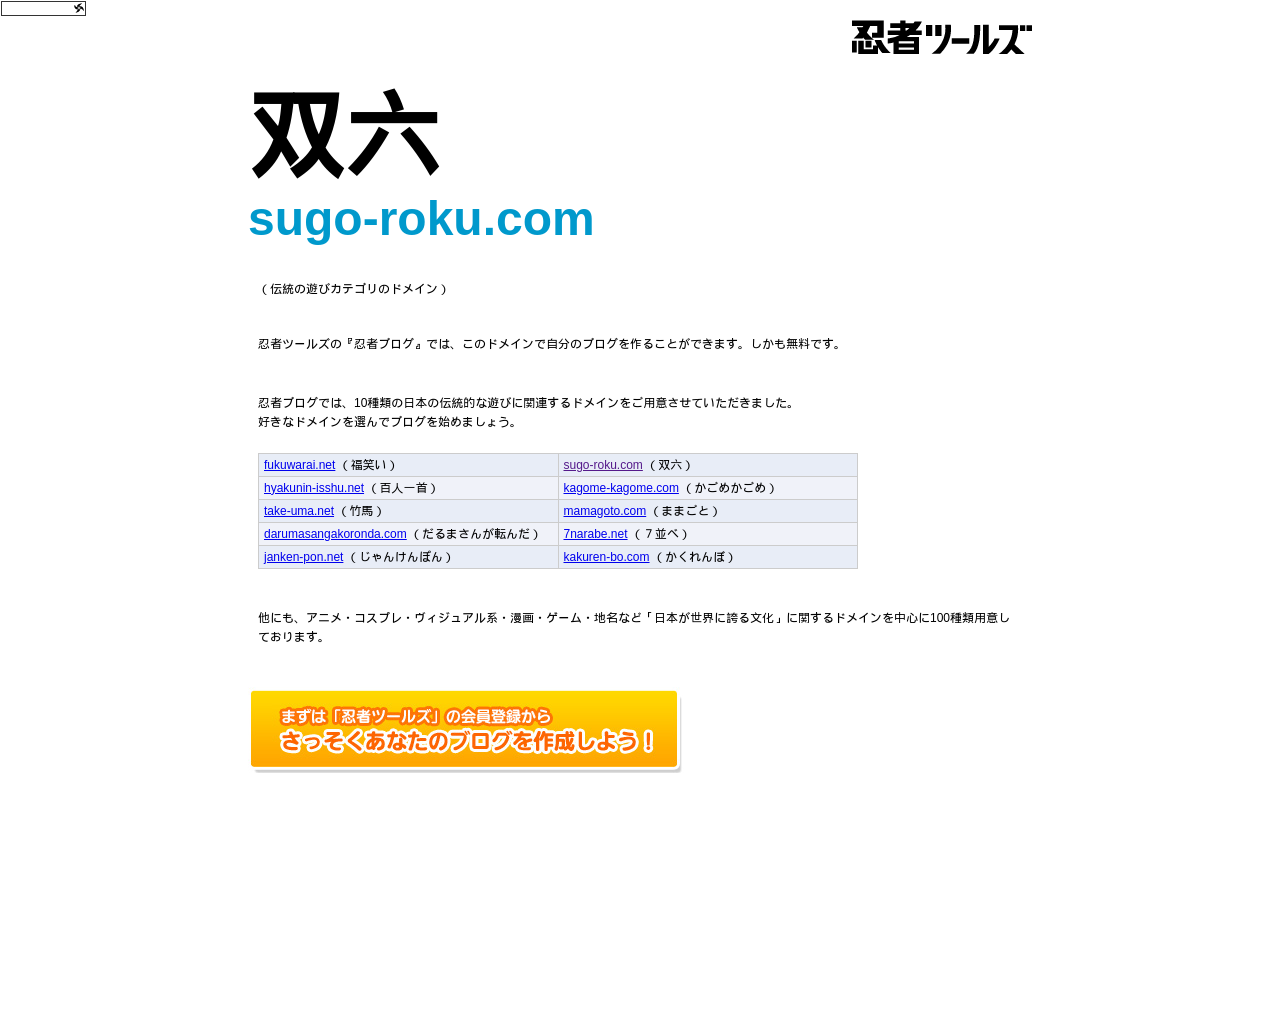 sugo-roku.com